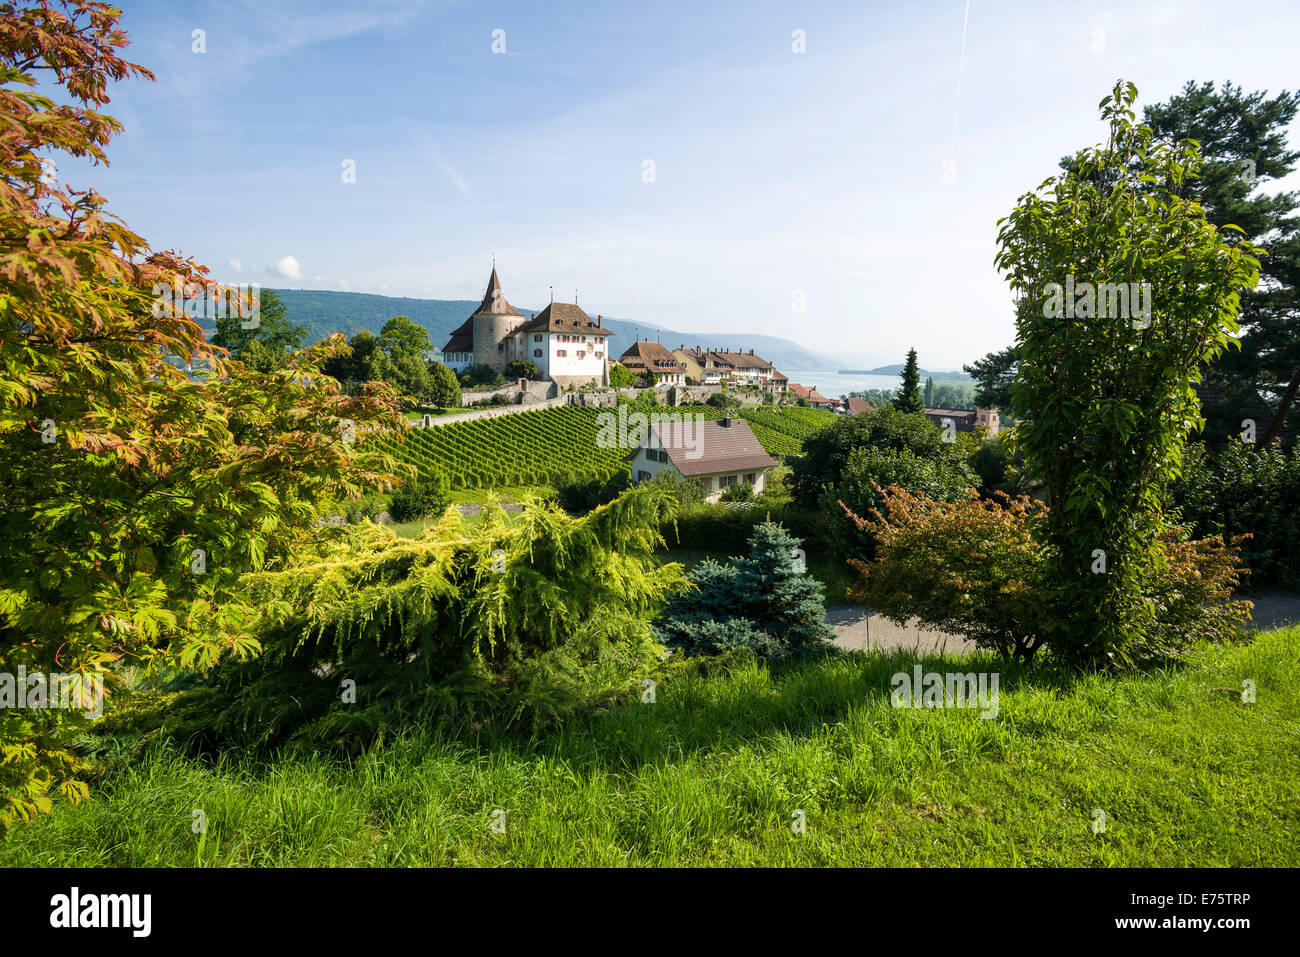 Château d'Erlach, situé sur une colline et entouré de vignes, Erlach, Berne, Suisse Banque D'Images